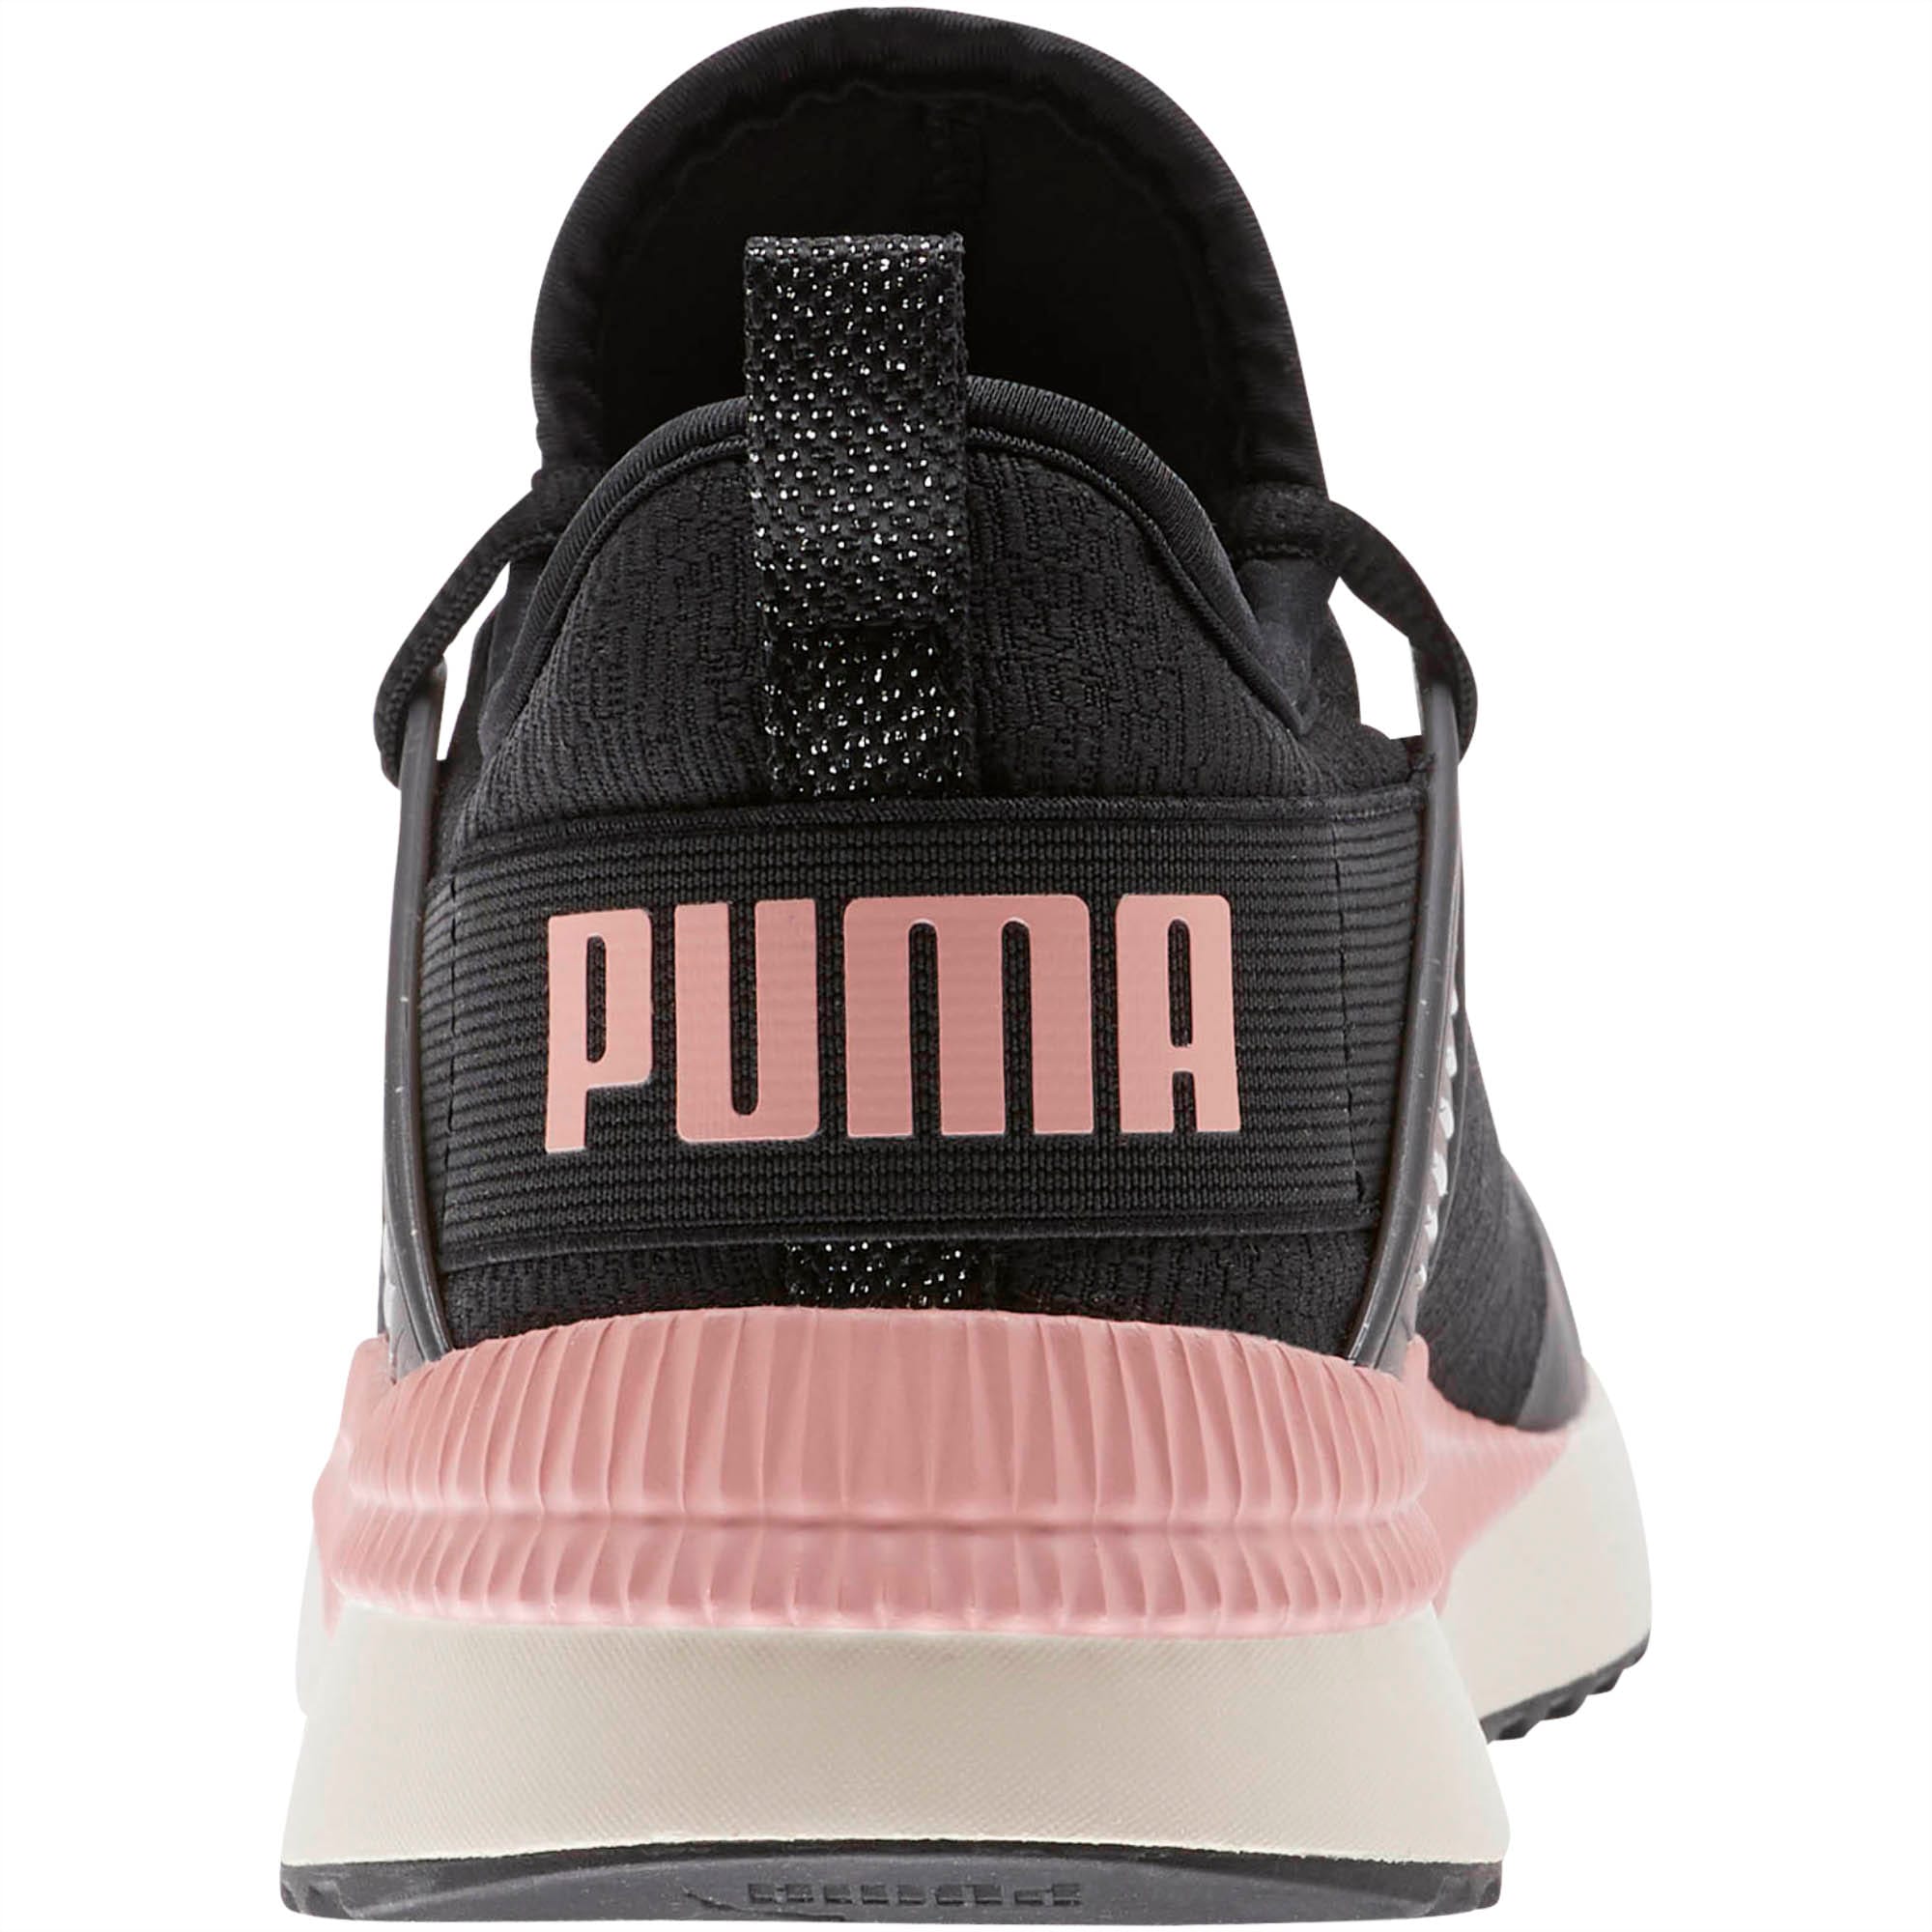 puma women's next cage metallic speckle shoes